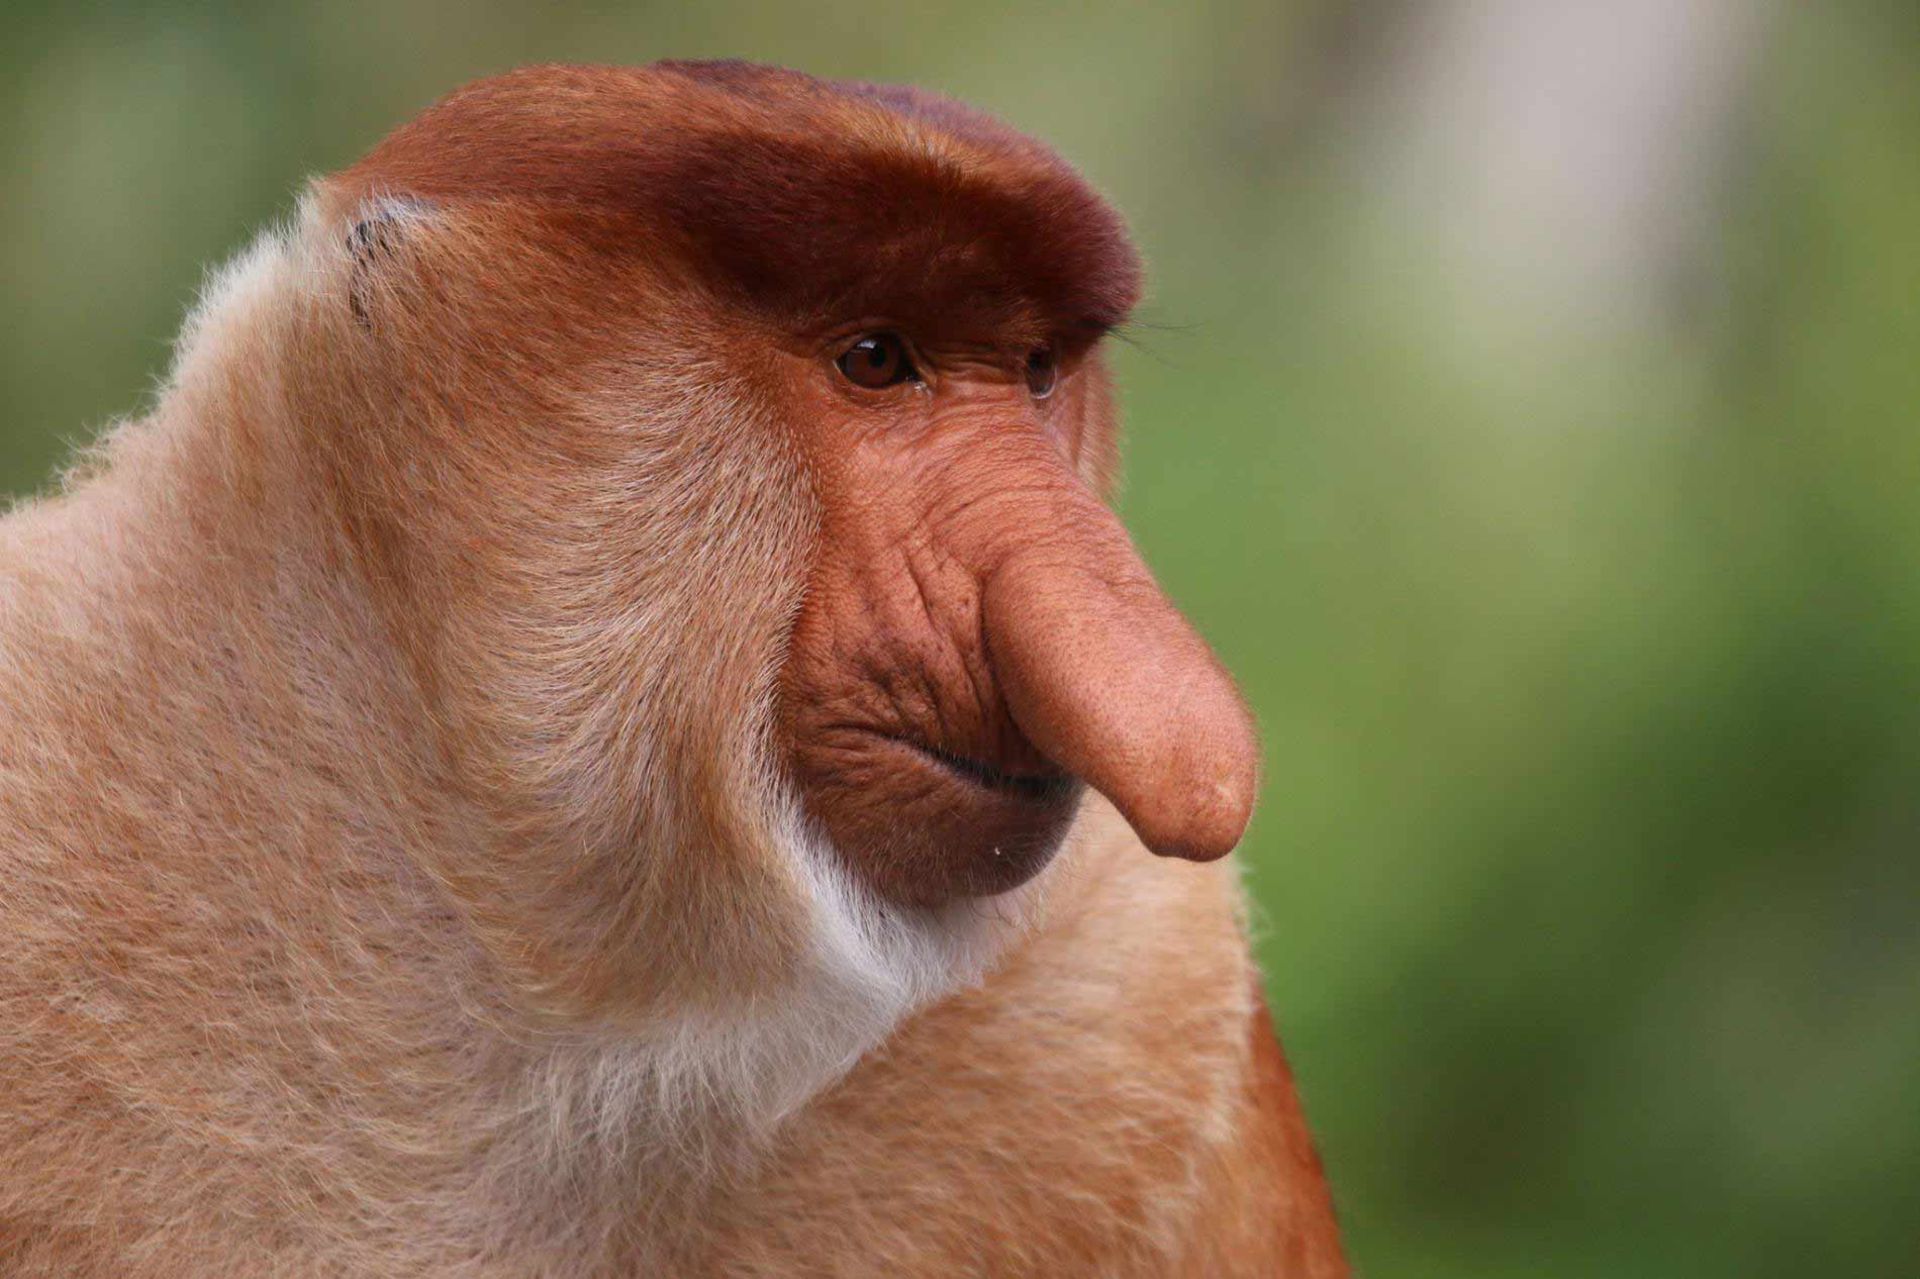 مرجع متخصصين ايران ميمون دماغ دراز / Proboscis Monkey